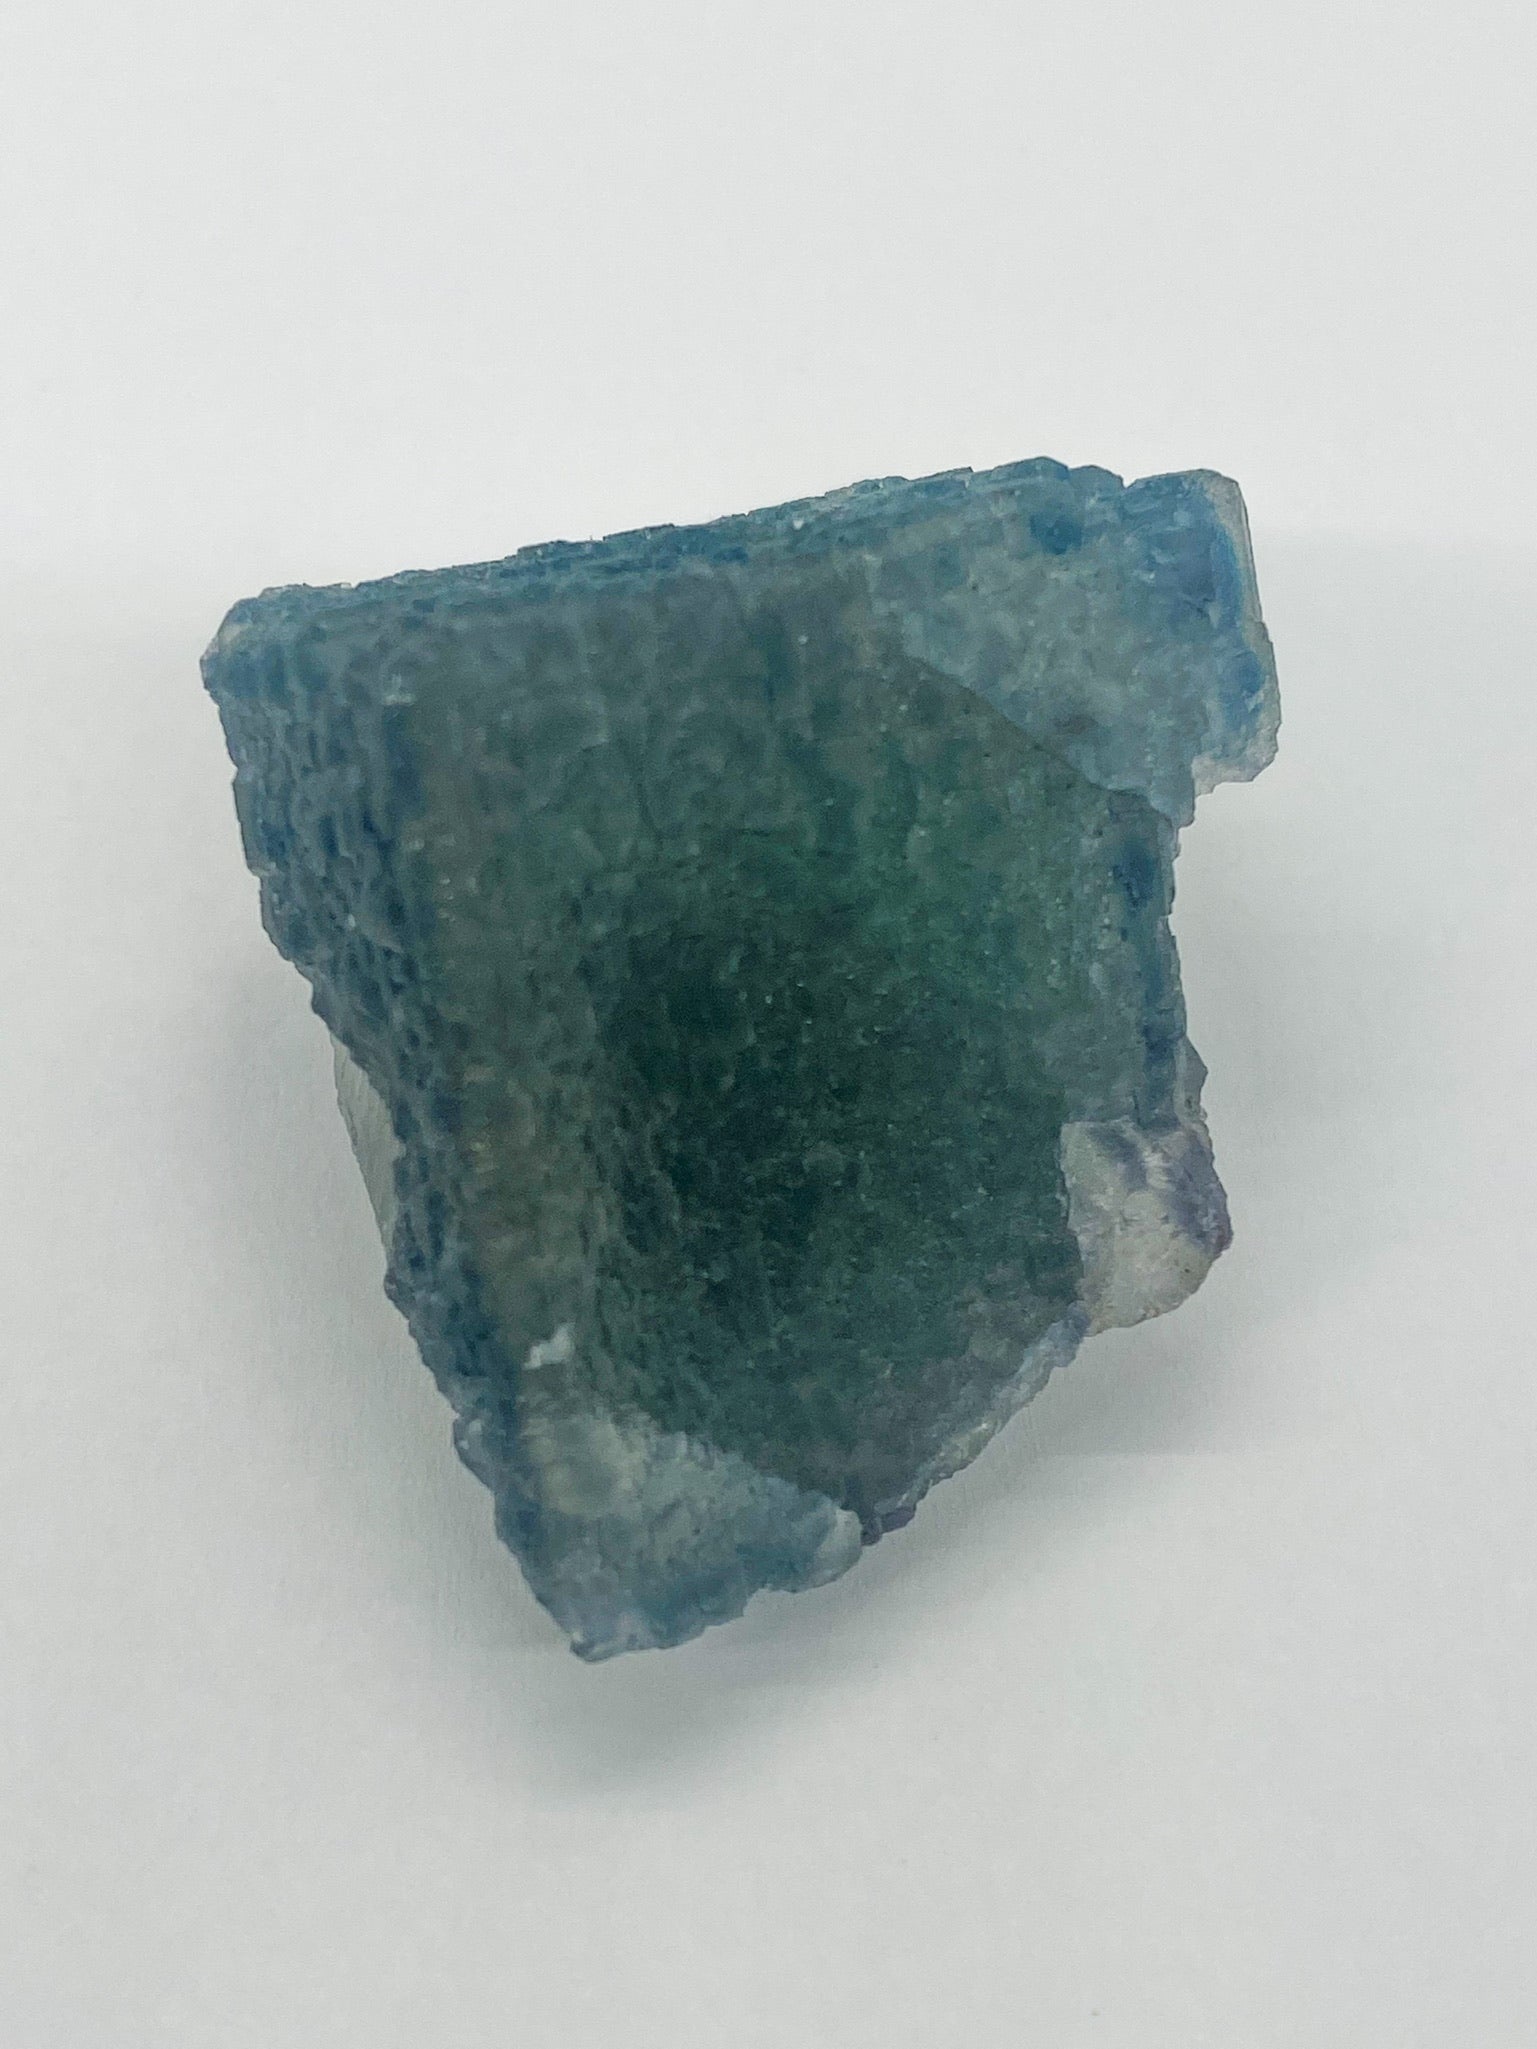 QR Blue-Green Fluorite